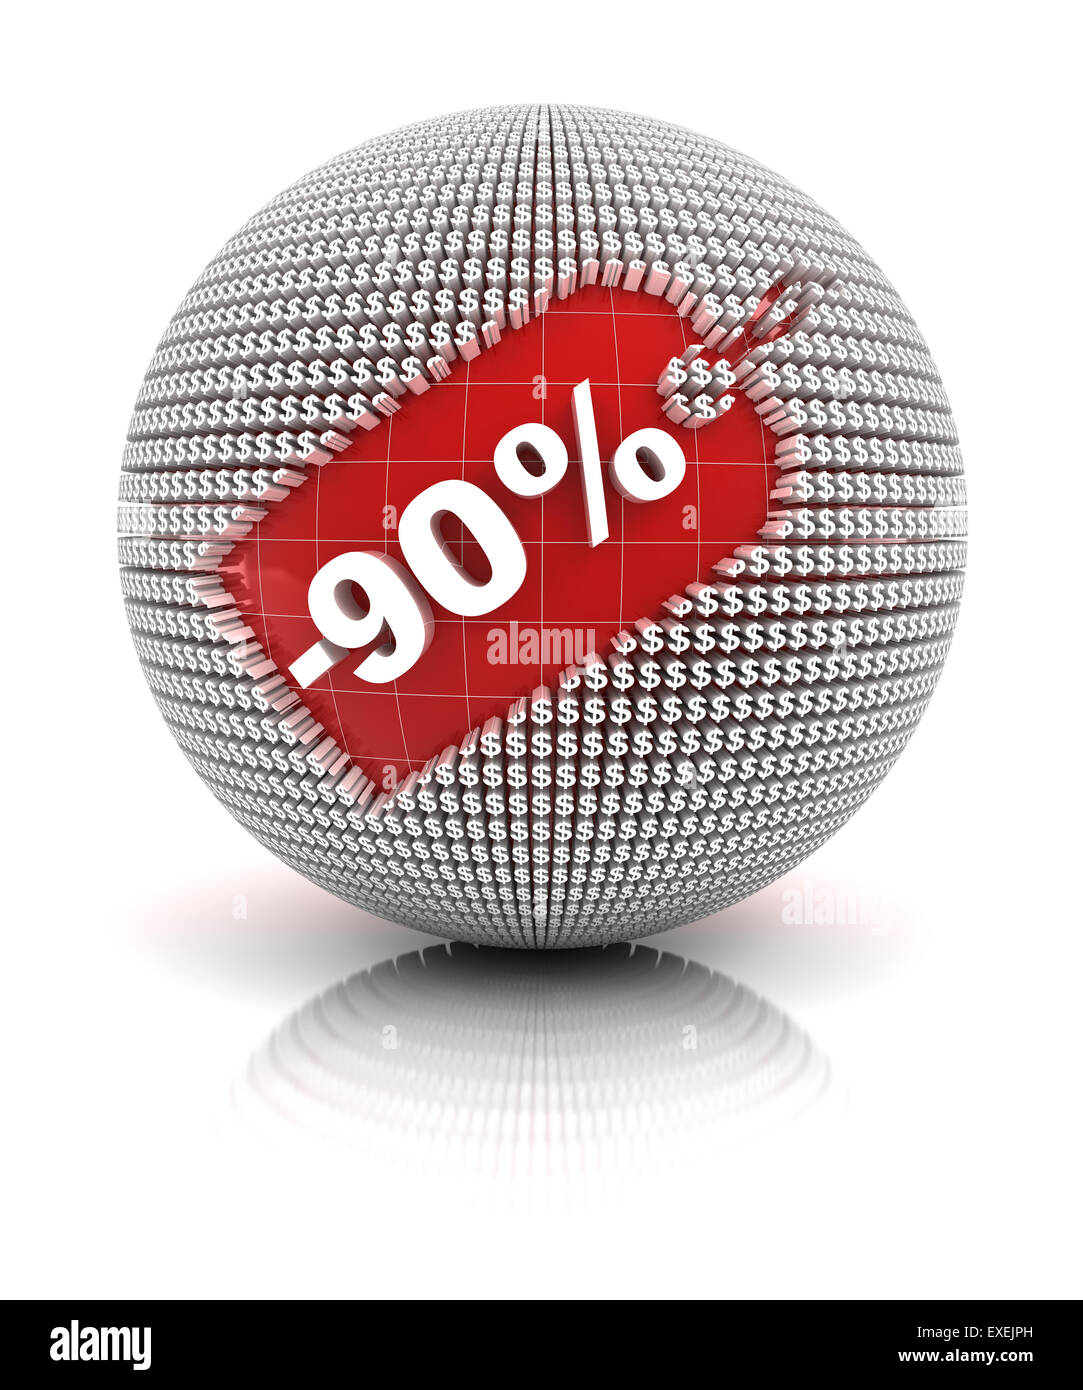 90 percento di sconto vendita tag su una sfera Foto Stock